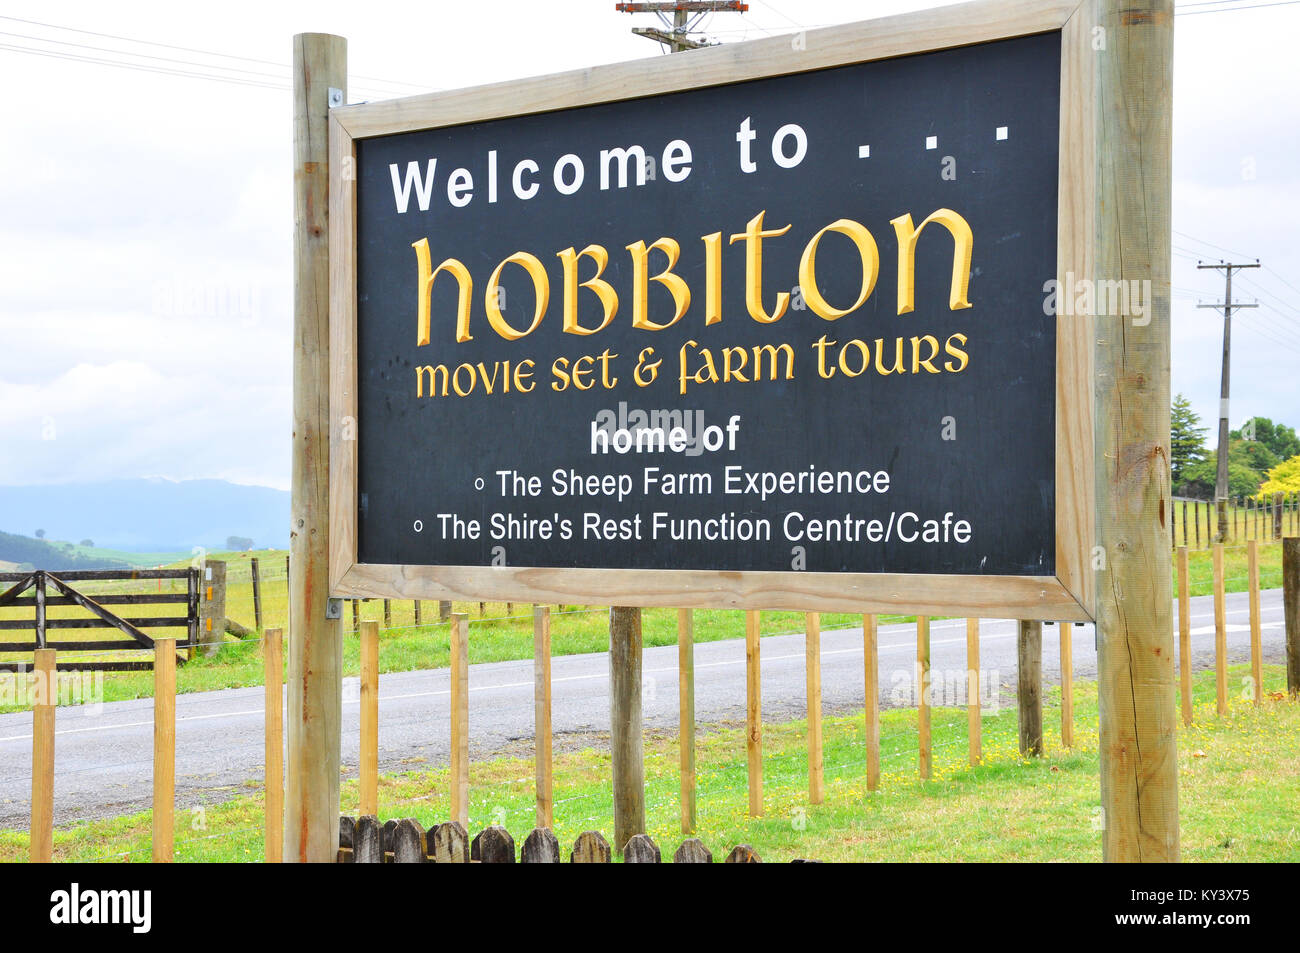 L'attrazione turistica del set cinematografico di Hobbiton nella fattoria vicino a Matamata, nuova Zelanda. Cartello del centro visitatori Foto Stock